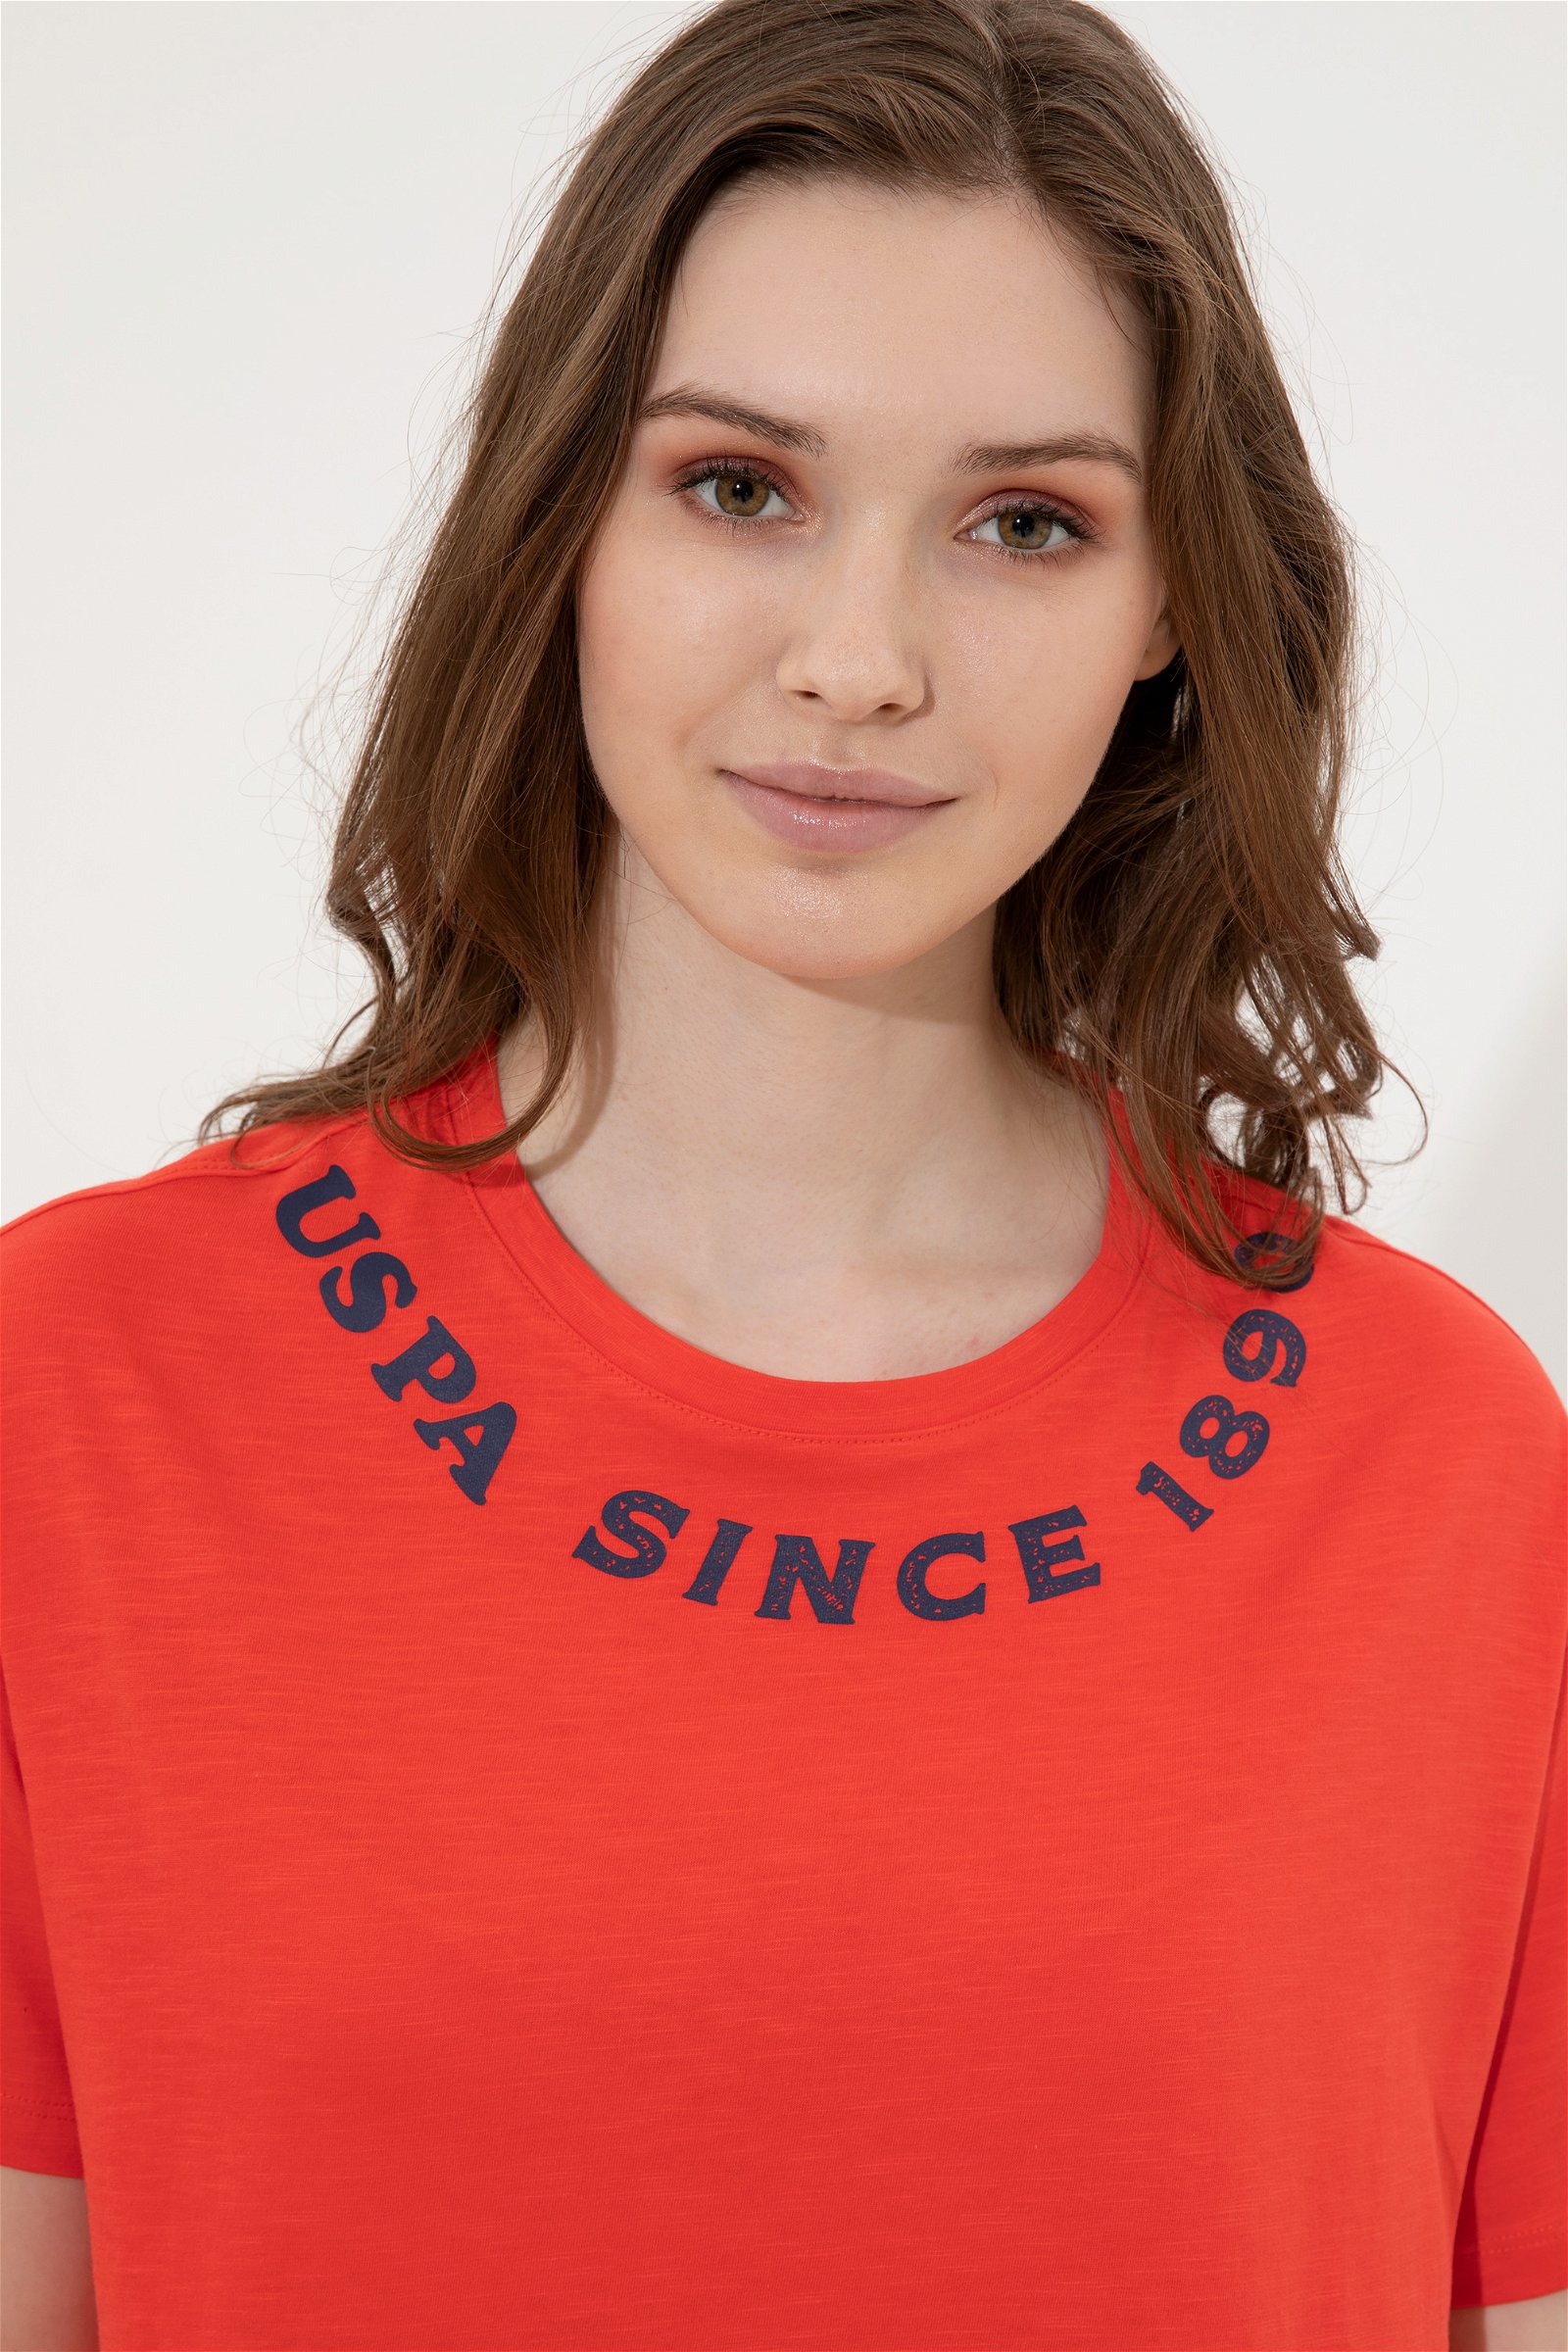 تی شرت  قرمز  Crop Top  زنانه یو اس پولو | US POLO ASSN